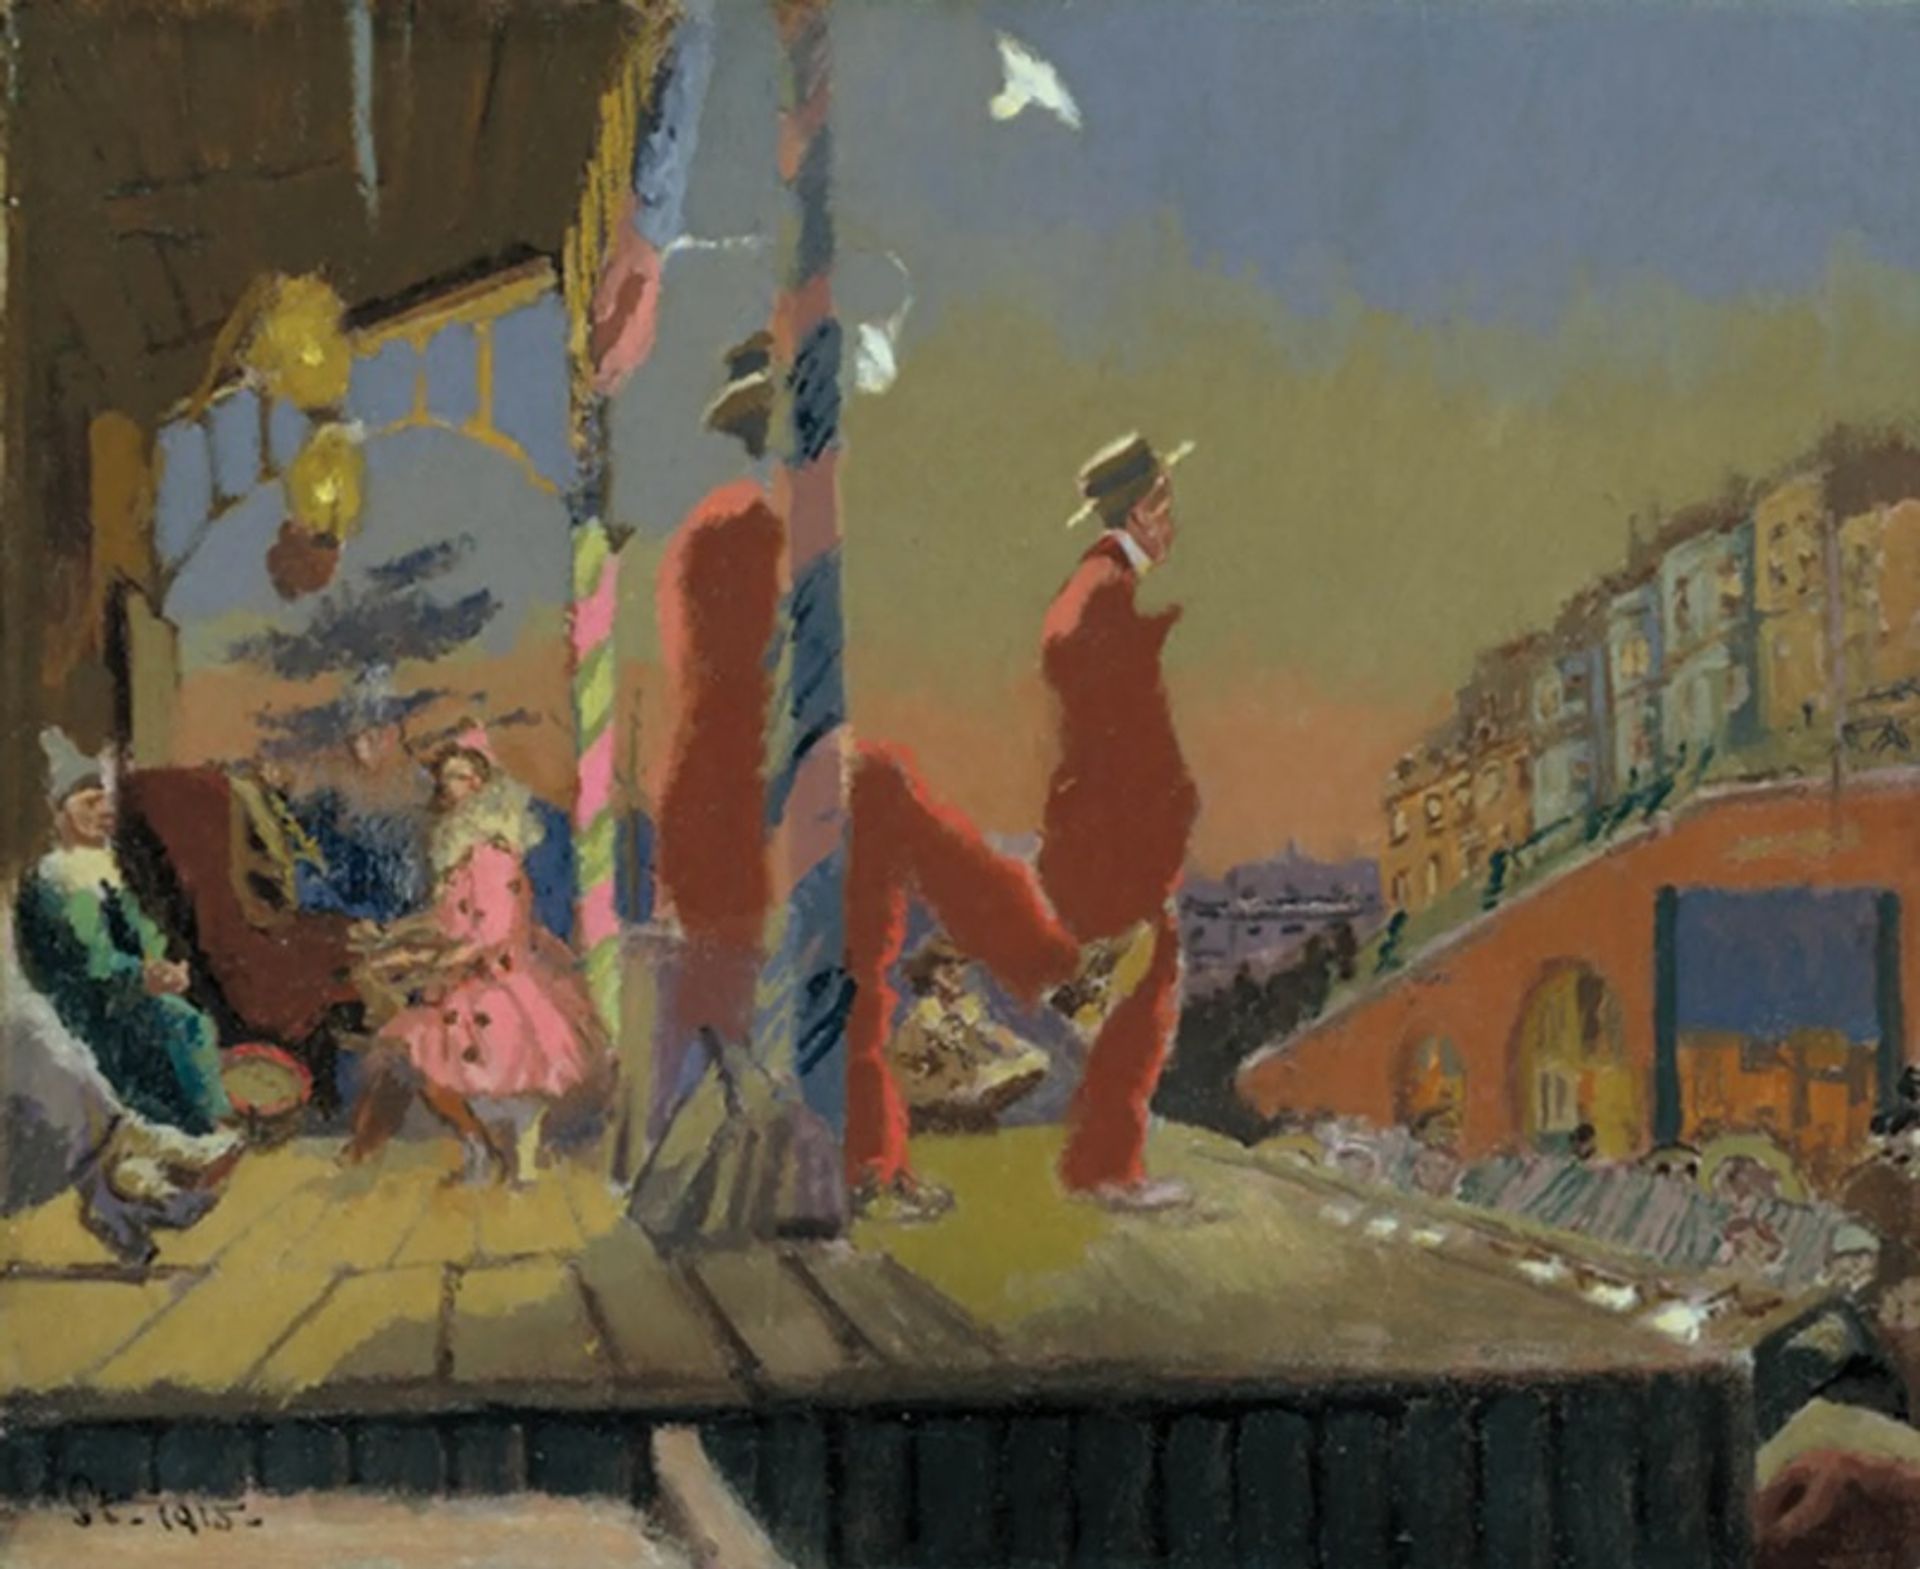 Brighton Pierrots (1915), צויר שנתיים לאחר שסיקרט פגש את דגה וחושף את השפעתו של האימפרסיוניסט על עבודתו

באדיבות הטייט